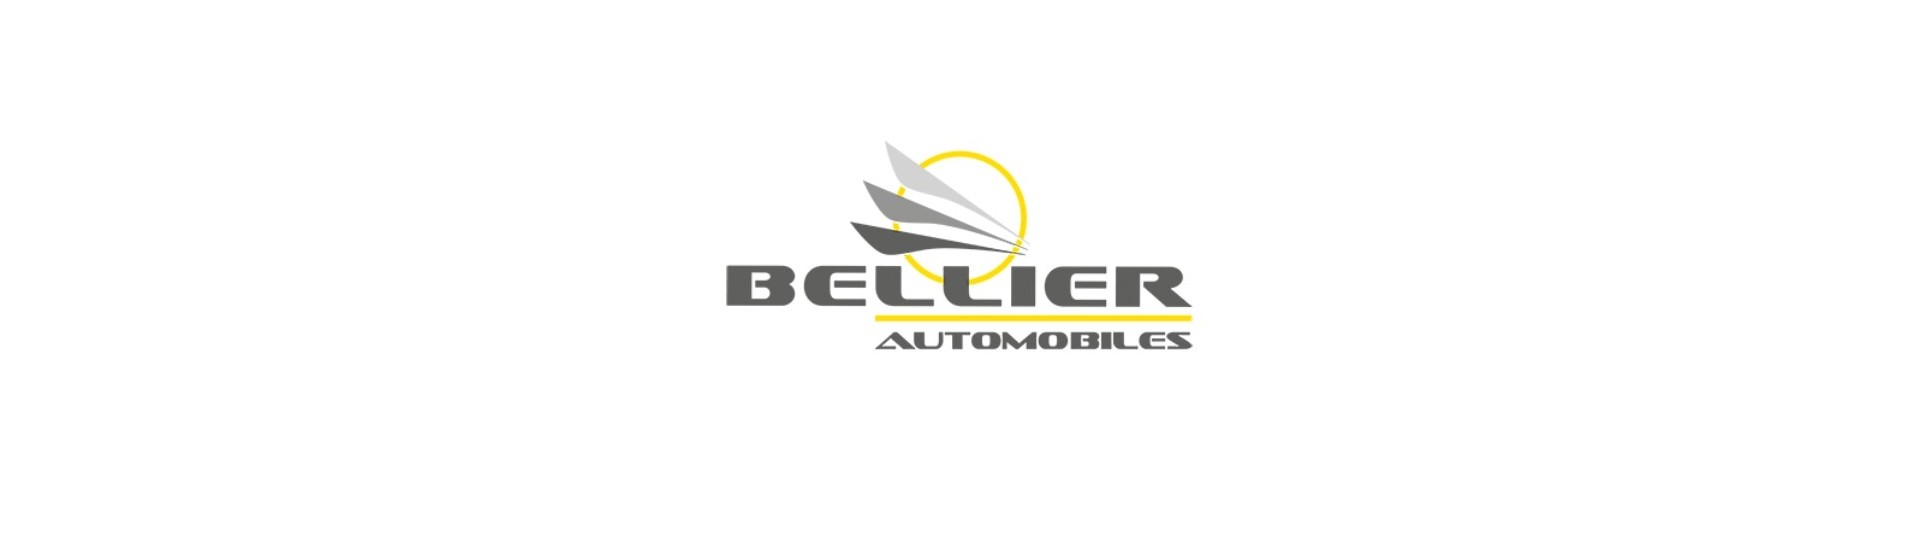 Logo et adhésif au meilleur prix pour voiture sans permis Bellier